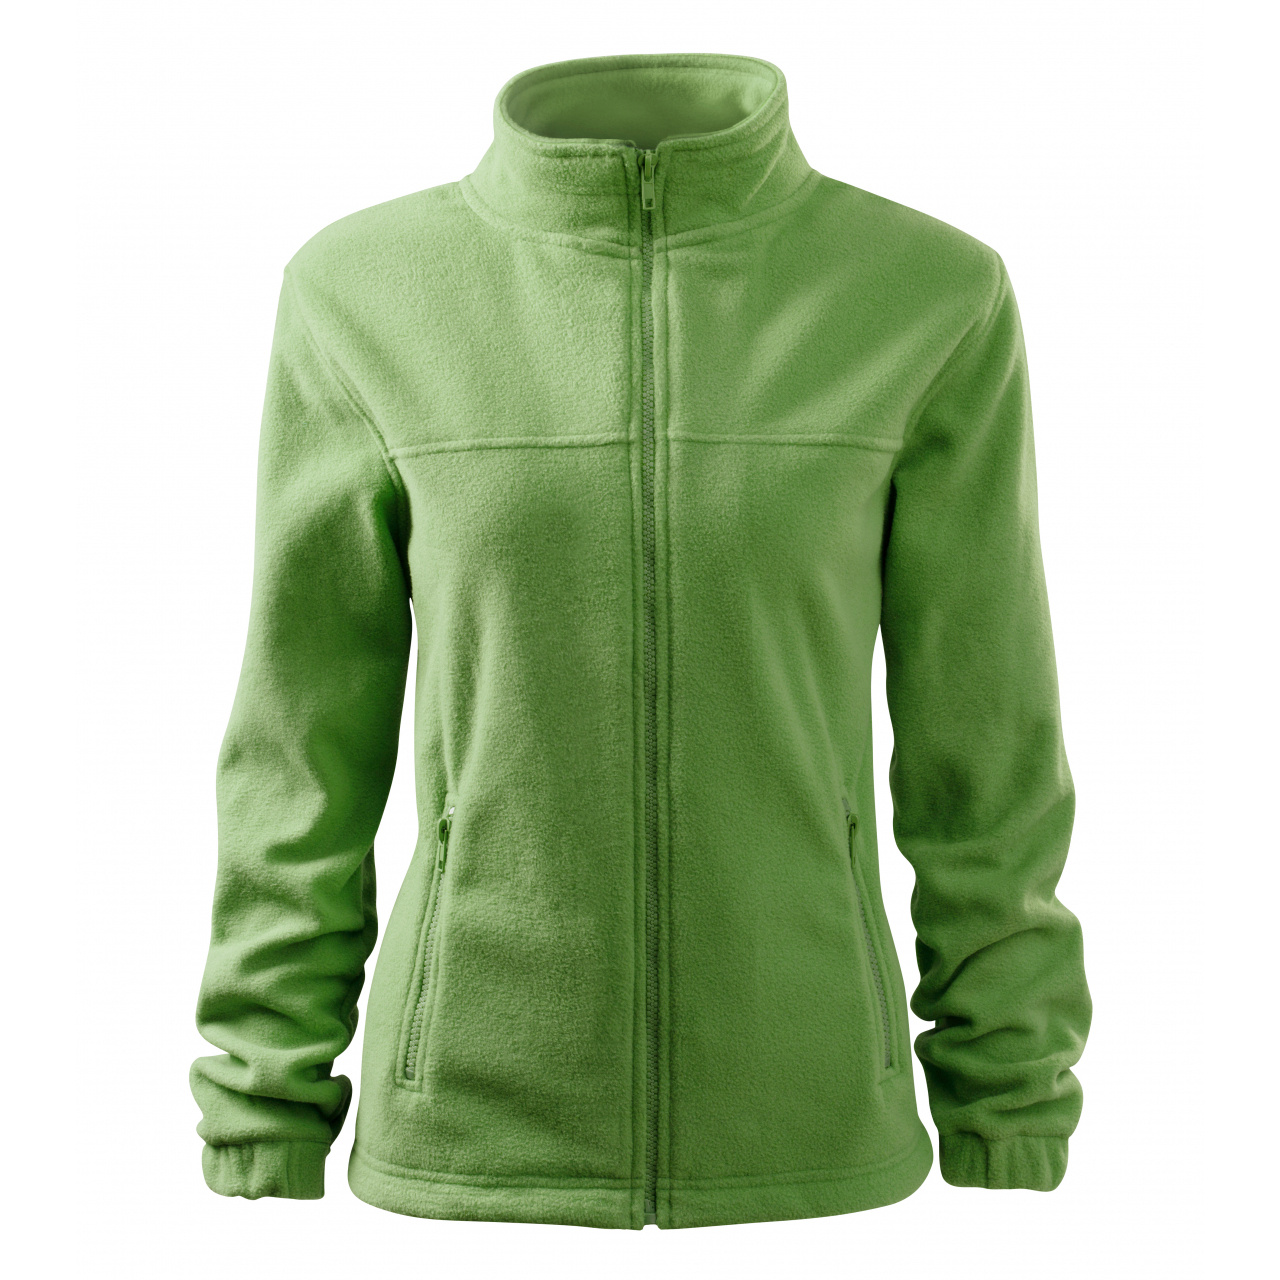 Bunda dámská Malfini Jacket - světle zelená, XL